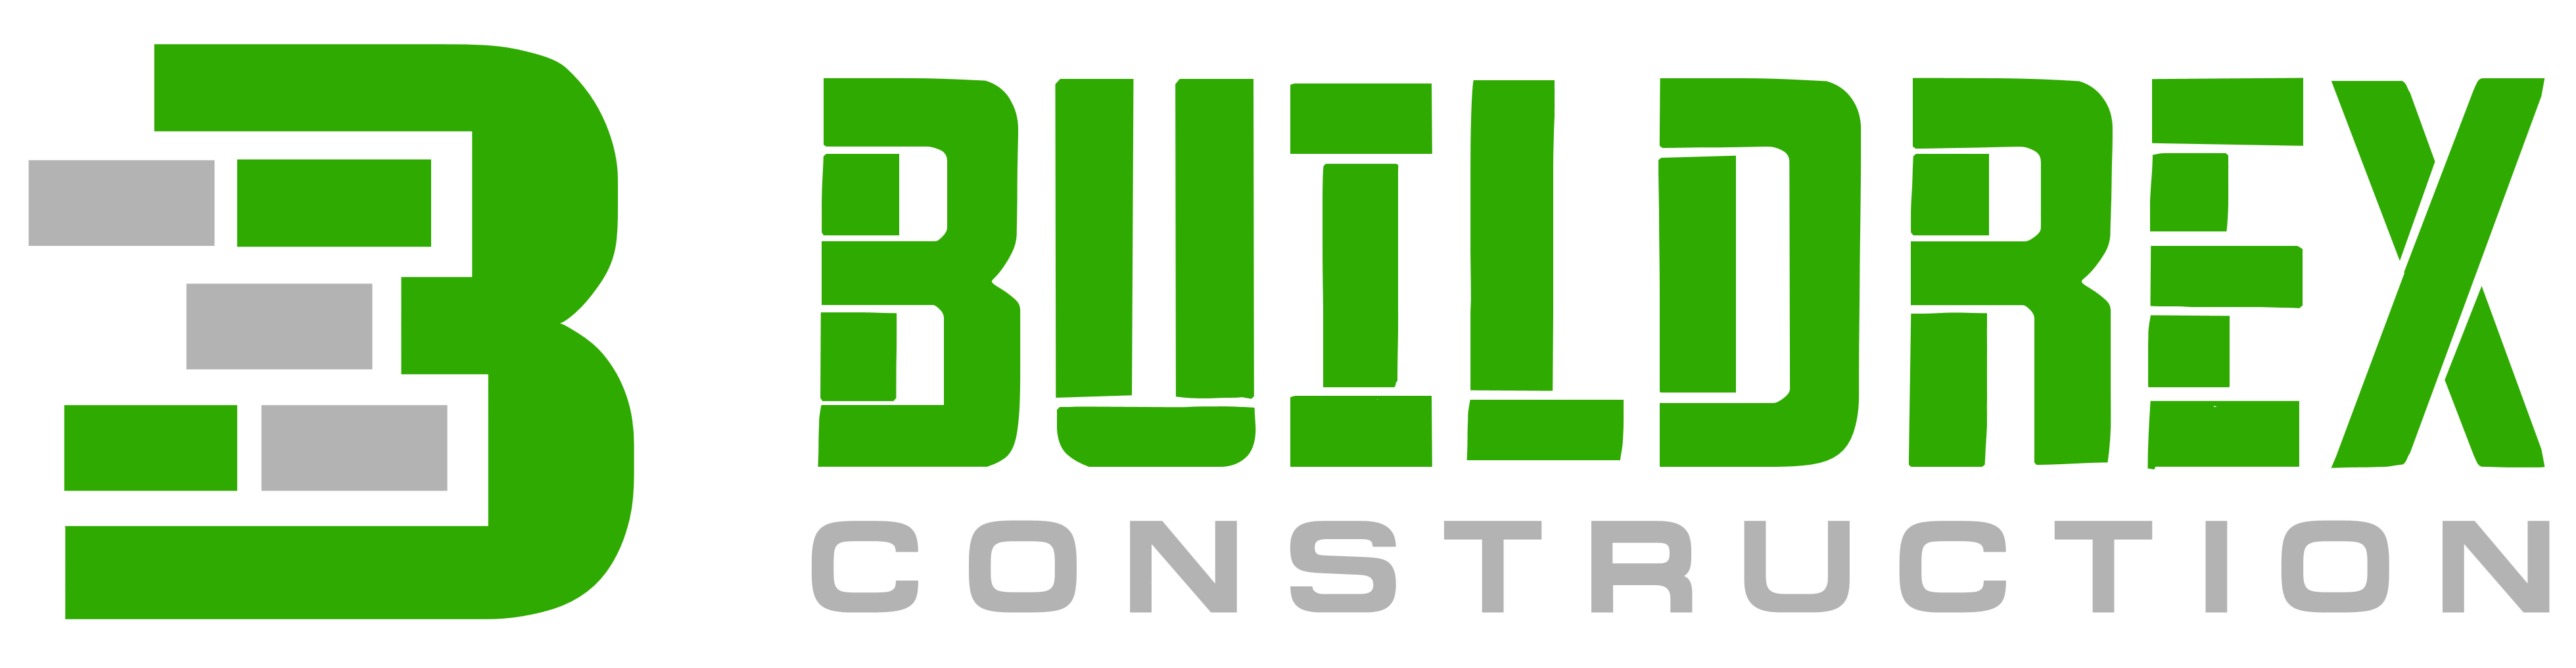 Buildrex Construction